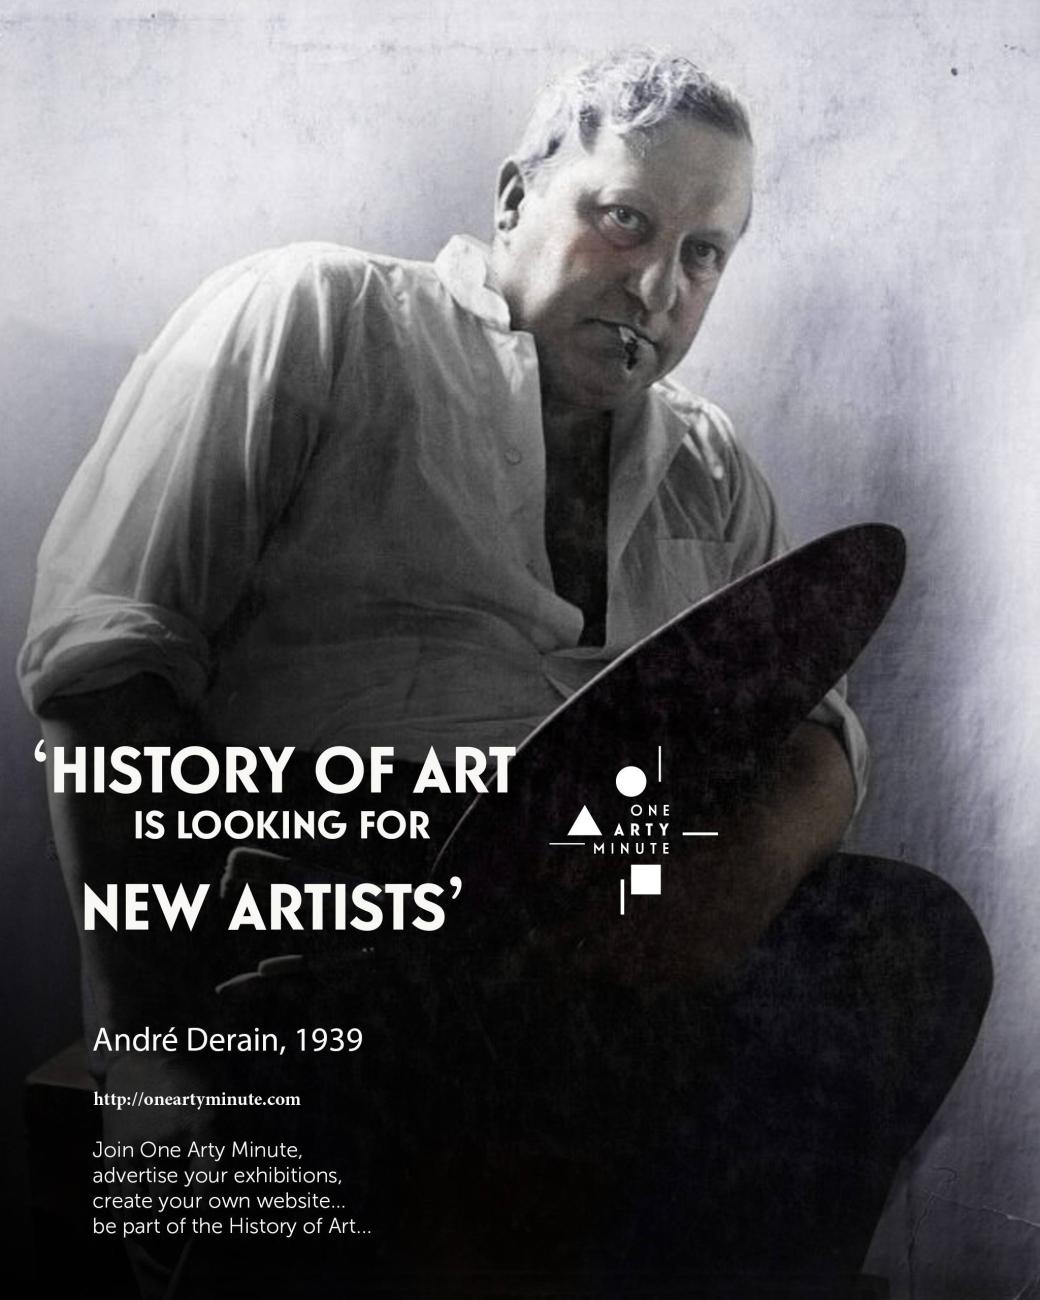 André Derain, Rejoignez One Arty Minute, annoncez vos expositions, vendez vos oeuvres et créez votre catalogue raisonné